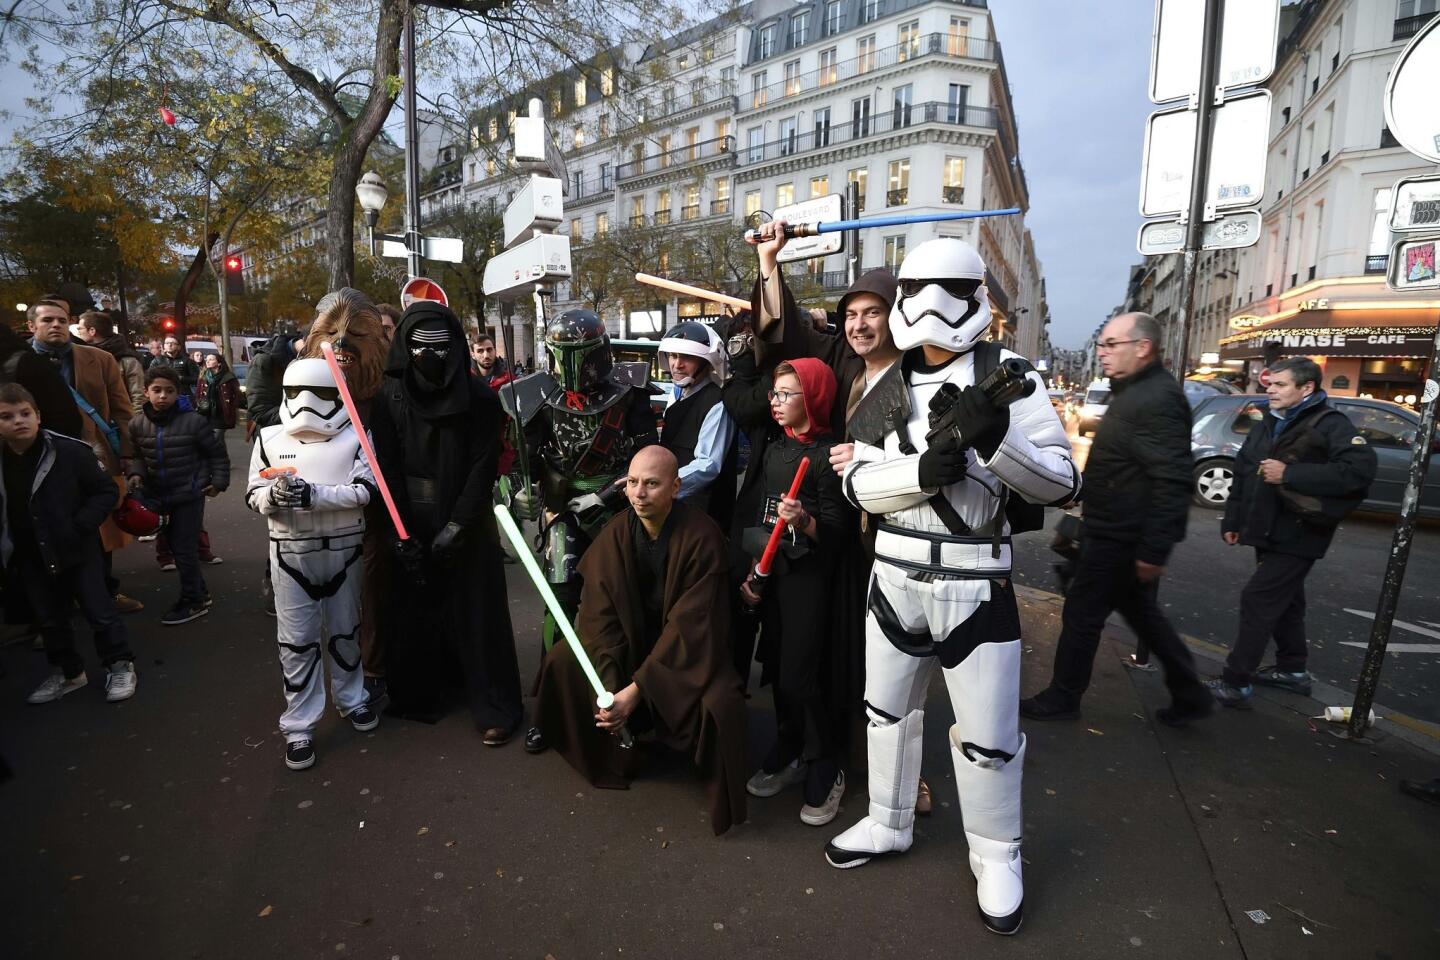 'Star Wars' franchise goes global: France